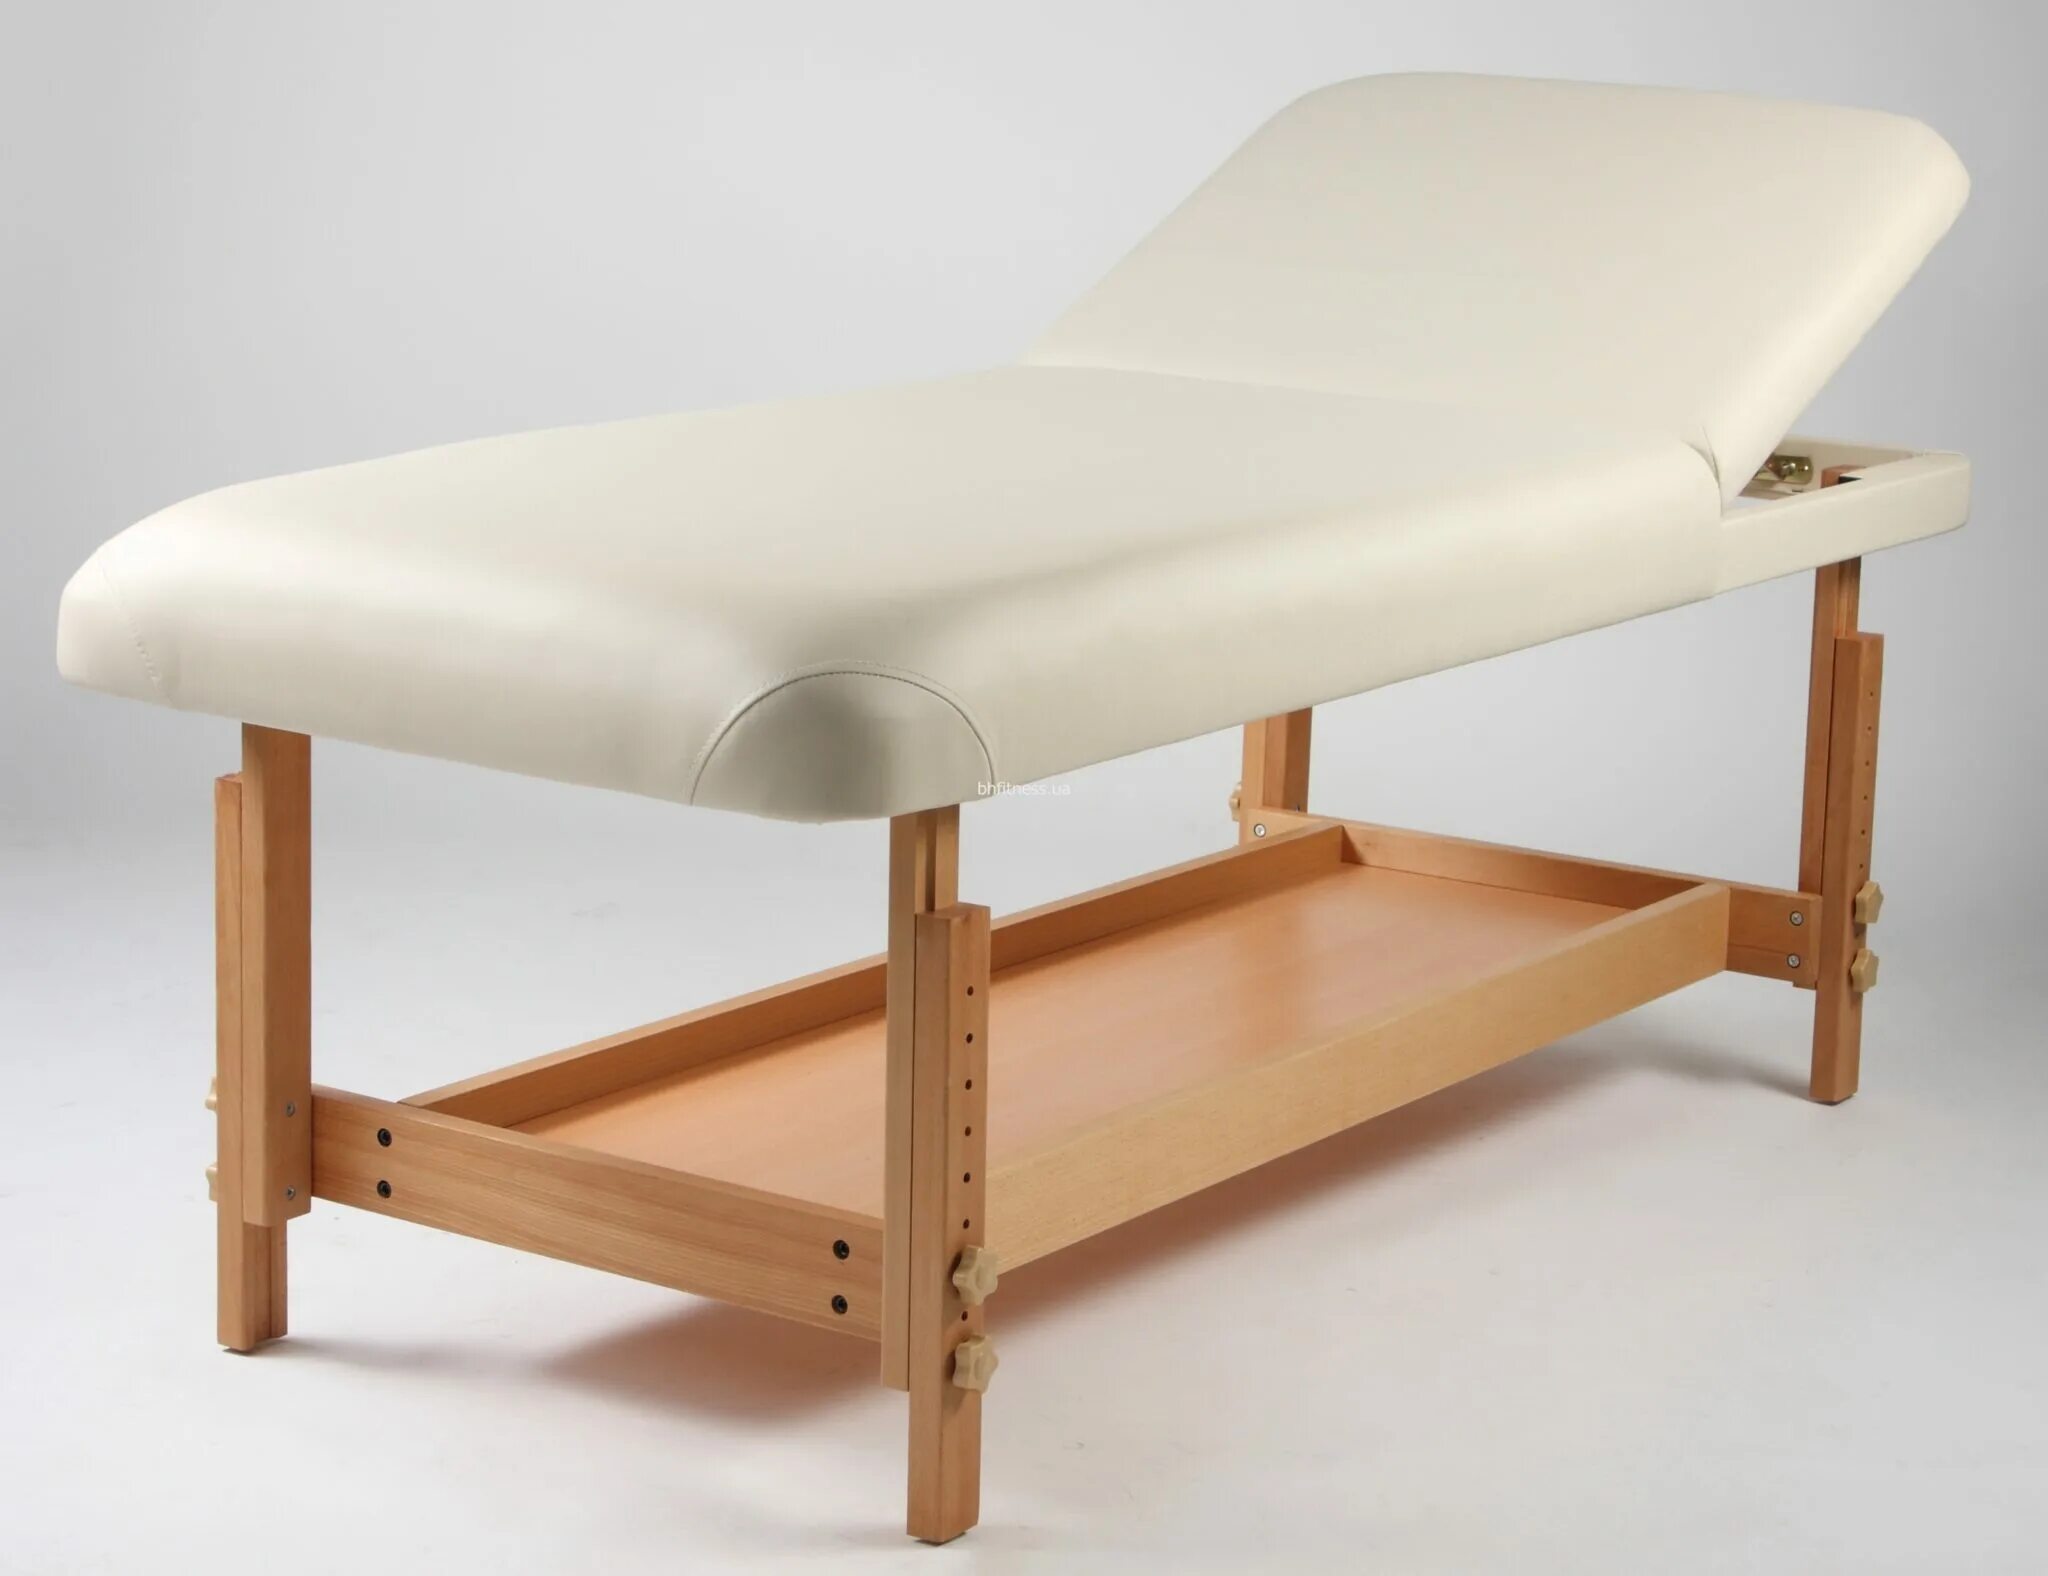 Массажный стол размеры. Массажный стол ASF Spa Comfort. Кушетка массажная деревянная. Деревянная кушетка для массажа. Массажный стол деревянный.